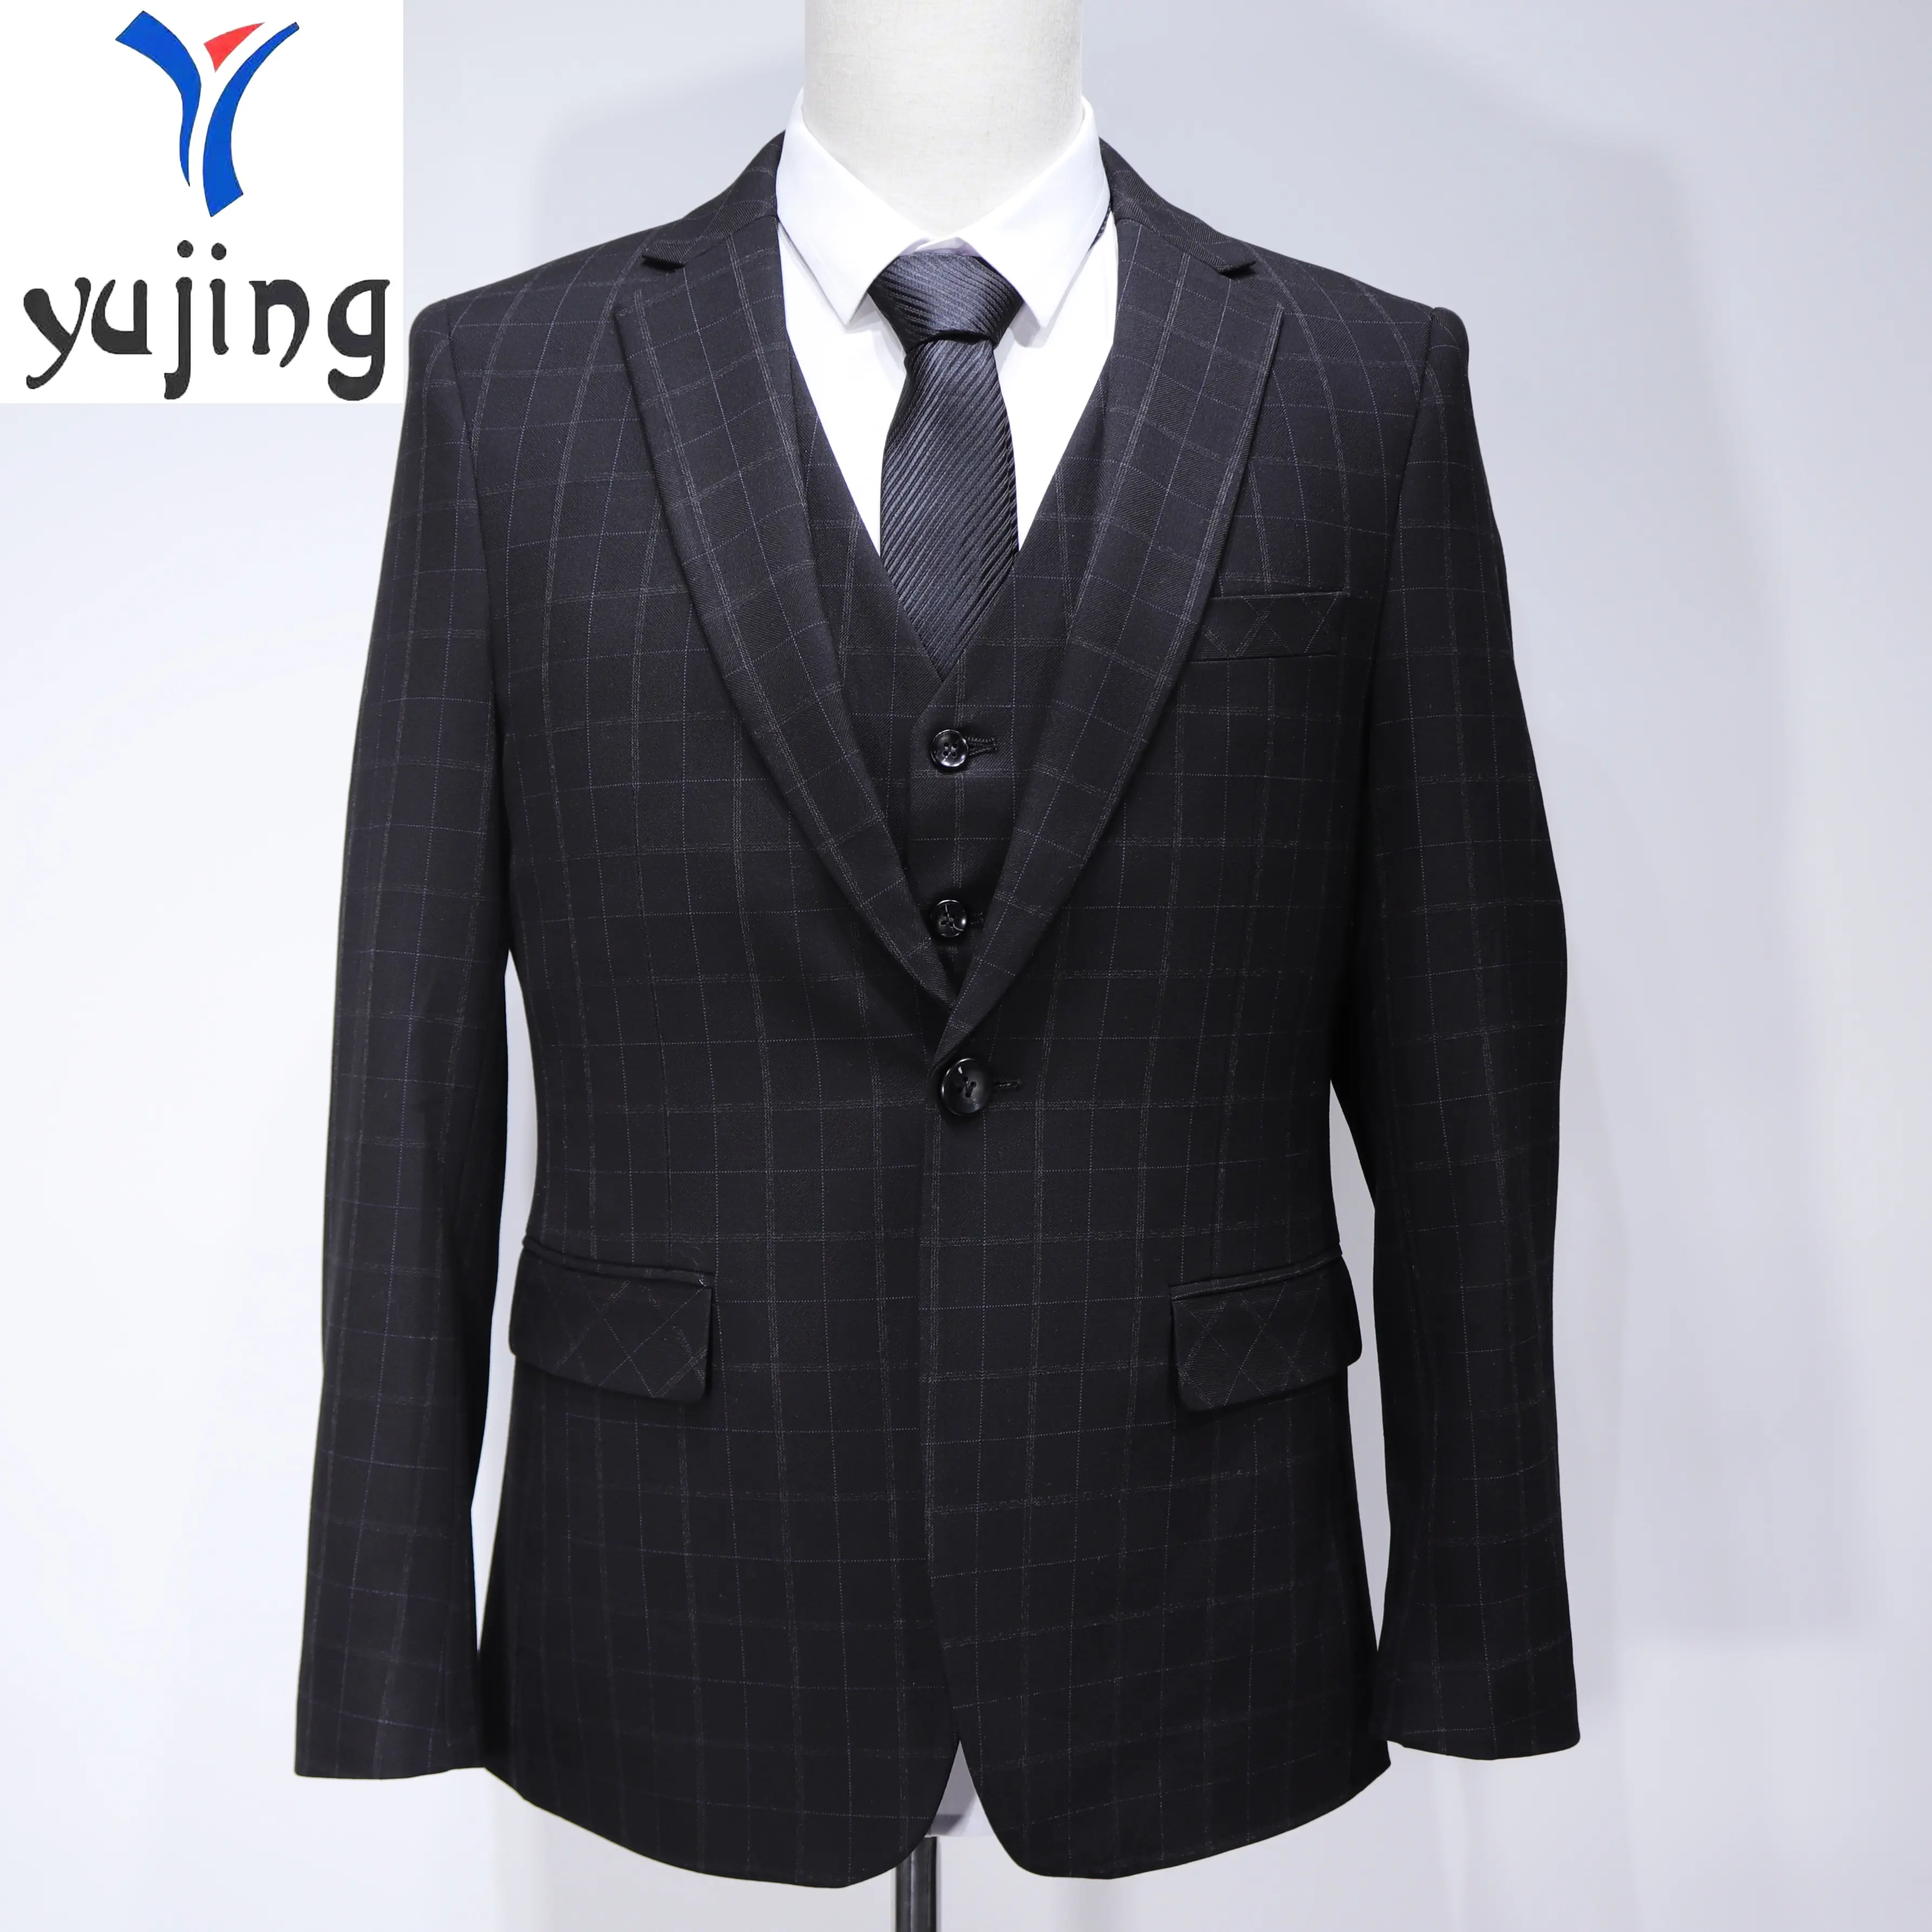 Black Grey Small Plaid to Plaid Suit Slim Suit Men's Tailored Clothing Men's Personalized Party Jacket Plaid Business Suit